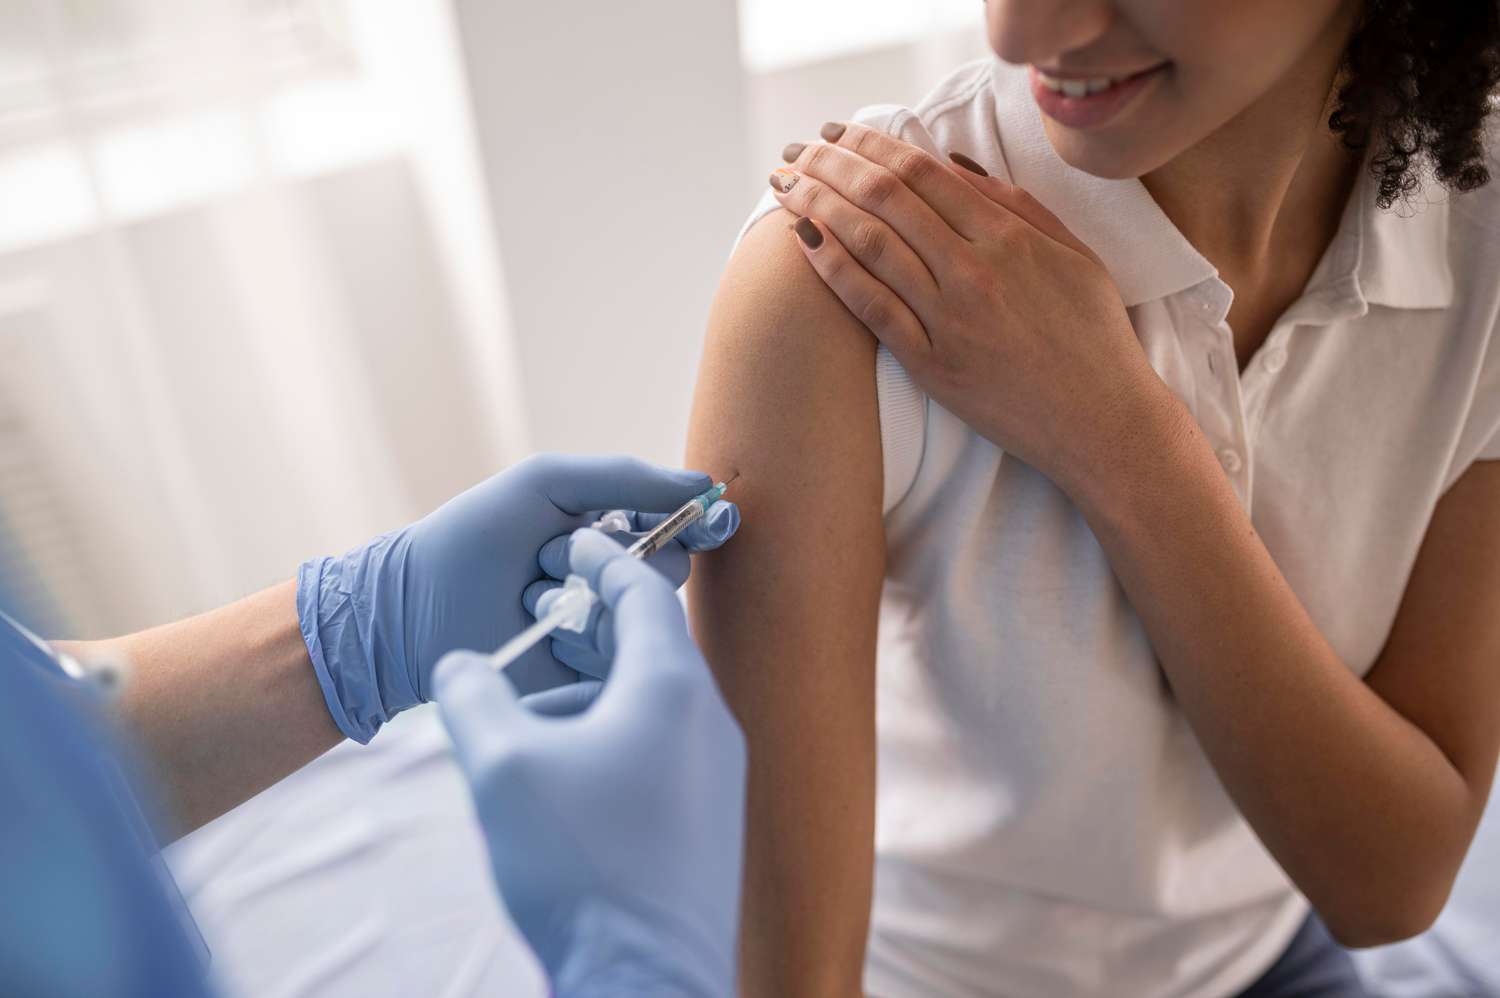 El jueves 21 de marzo comienza la campaña de vacunación antigripal en la ciudad